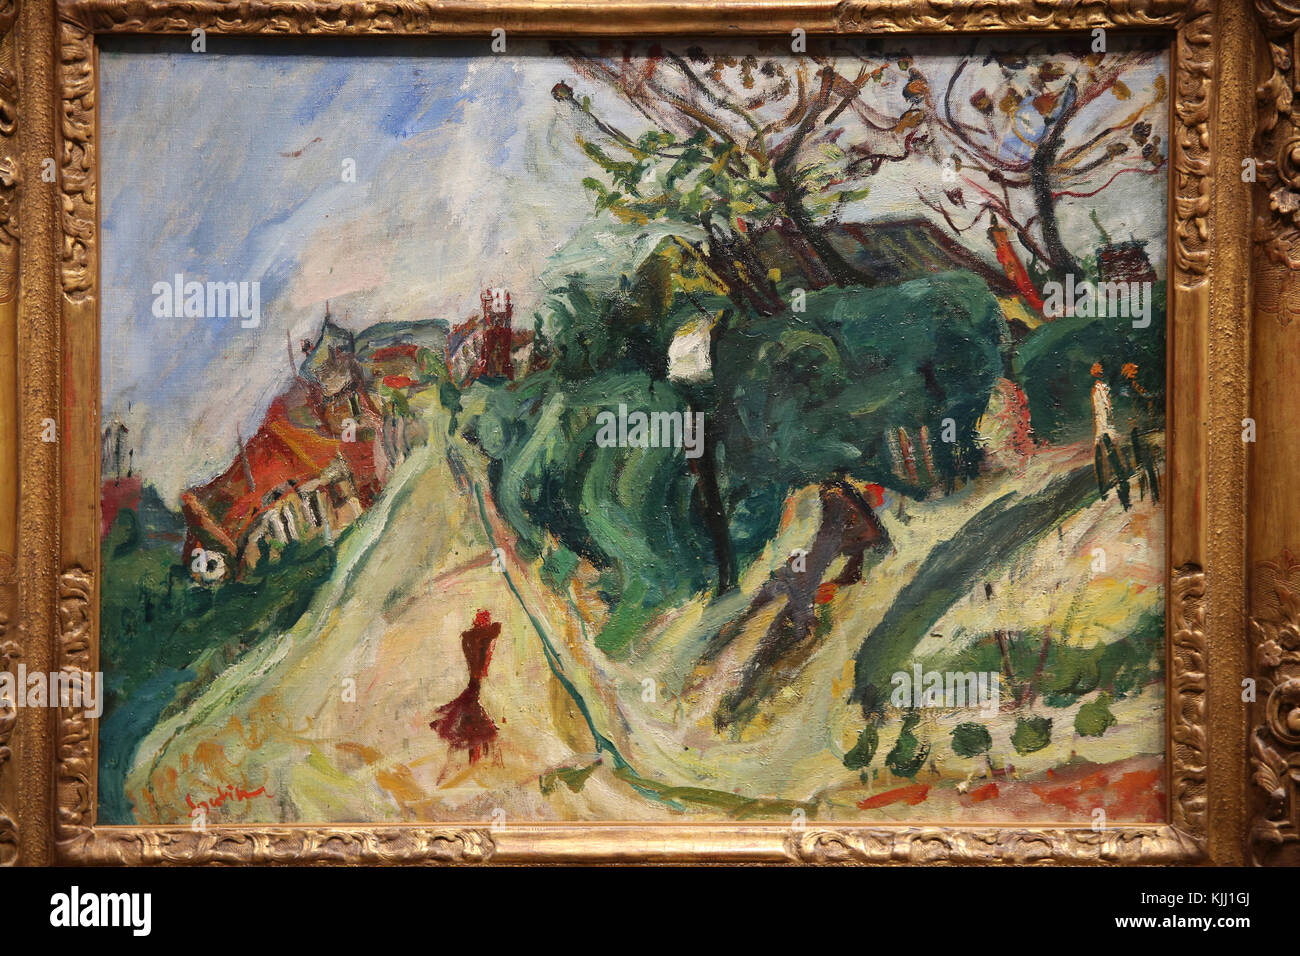 MusŽe de l'Orangerie, Paris. Cha•m Soutine, Paysage avec personnage, vers 1918-1919. Huile sur toile. La France. Banque D'Images